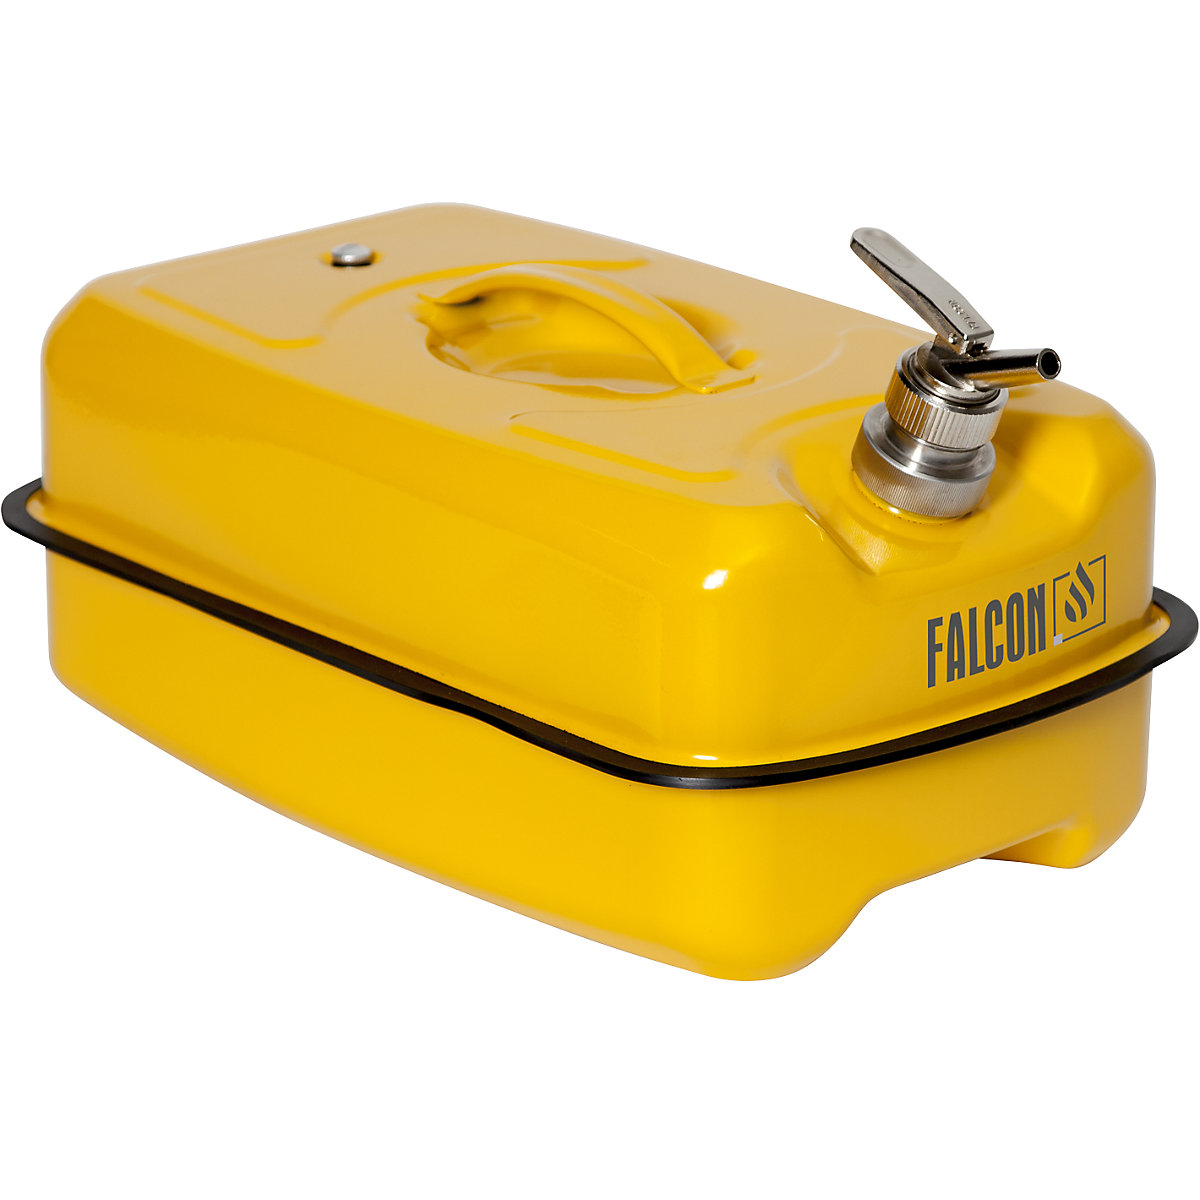 FALCON – Canistră de siguranță plată cu robinet pentru dozare fină (Imagine produs 10)